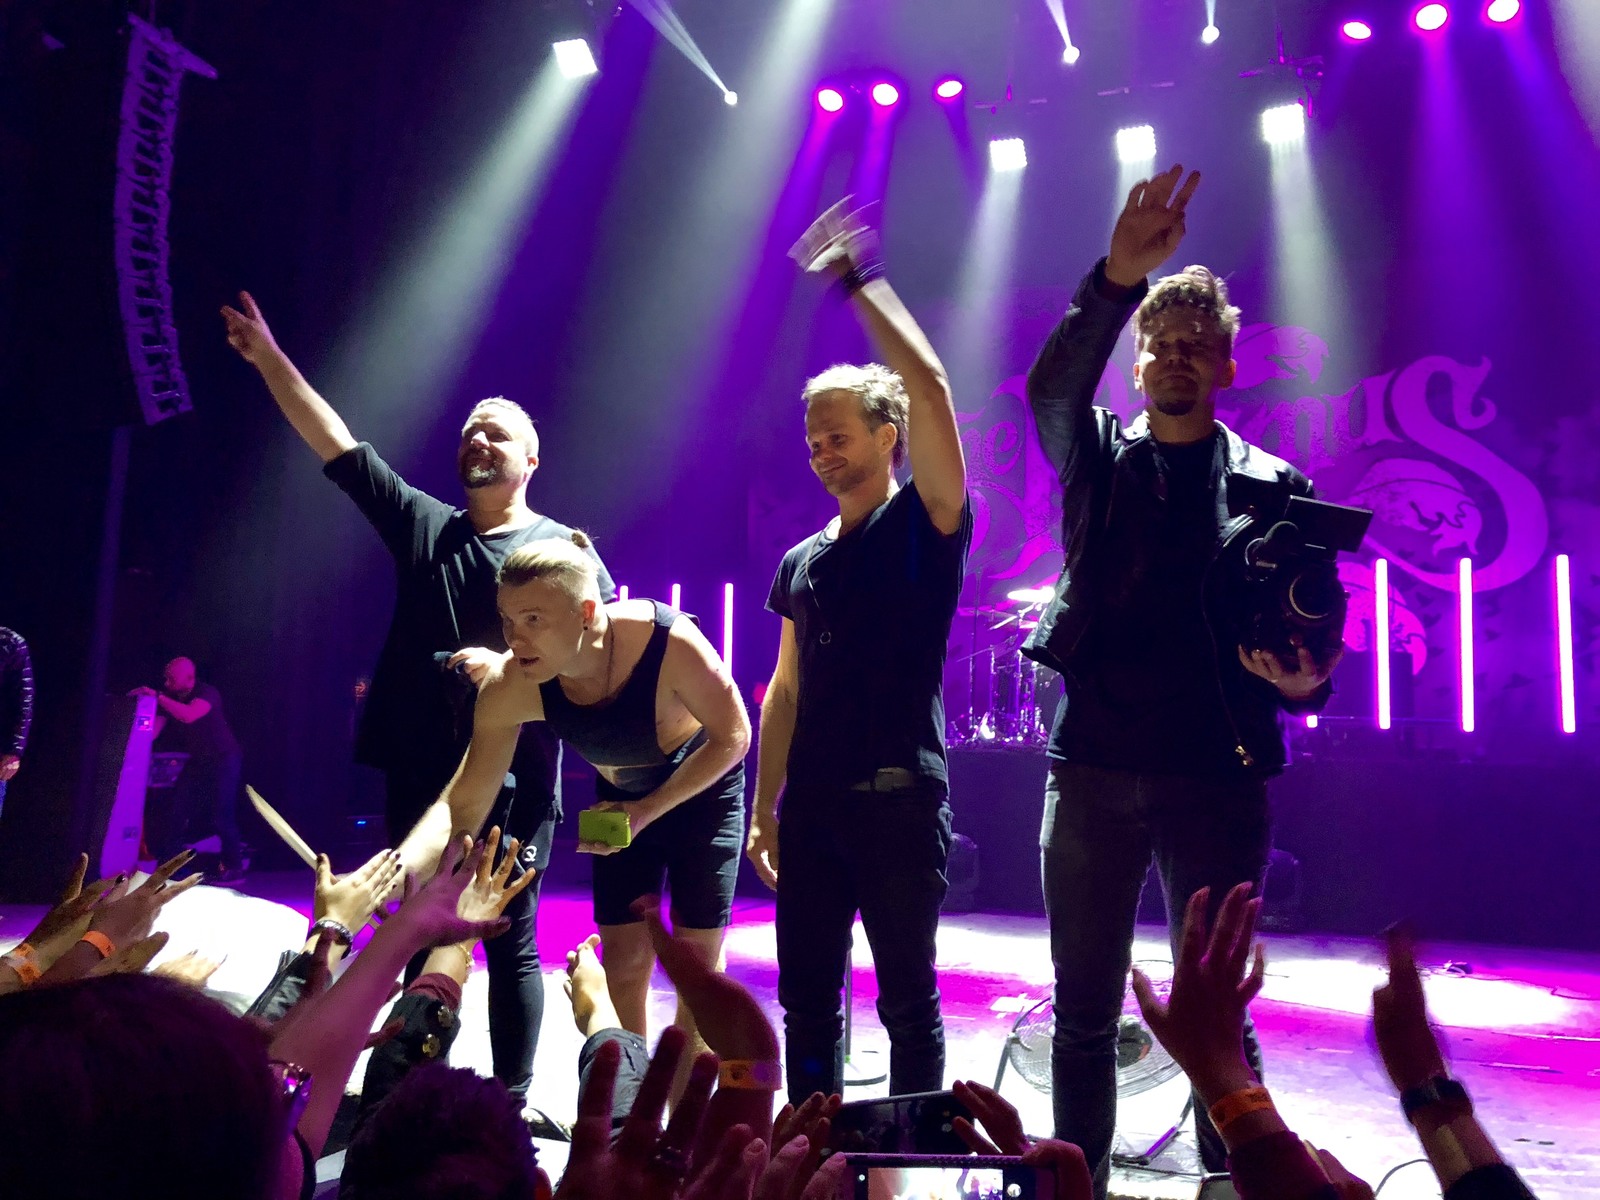 De vuelta. La agrupación finlandesa se presentó en Monterrey ofreciendo el primero de cuatro conciertos de su gira. (JOSÉ HERNÁNDEZ)